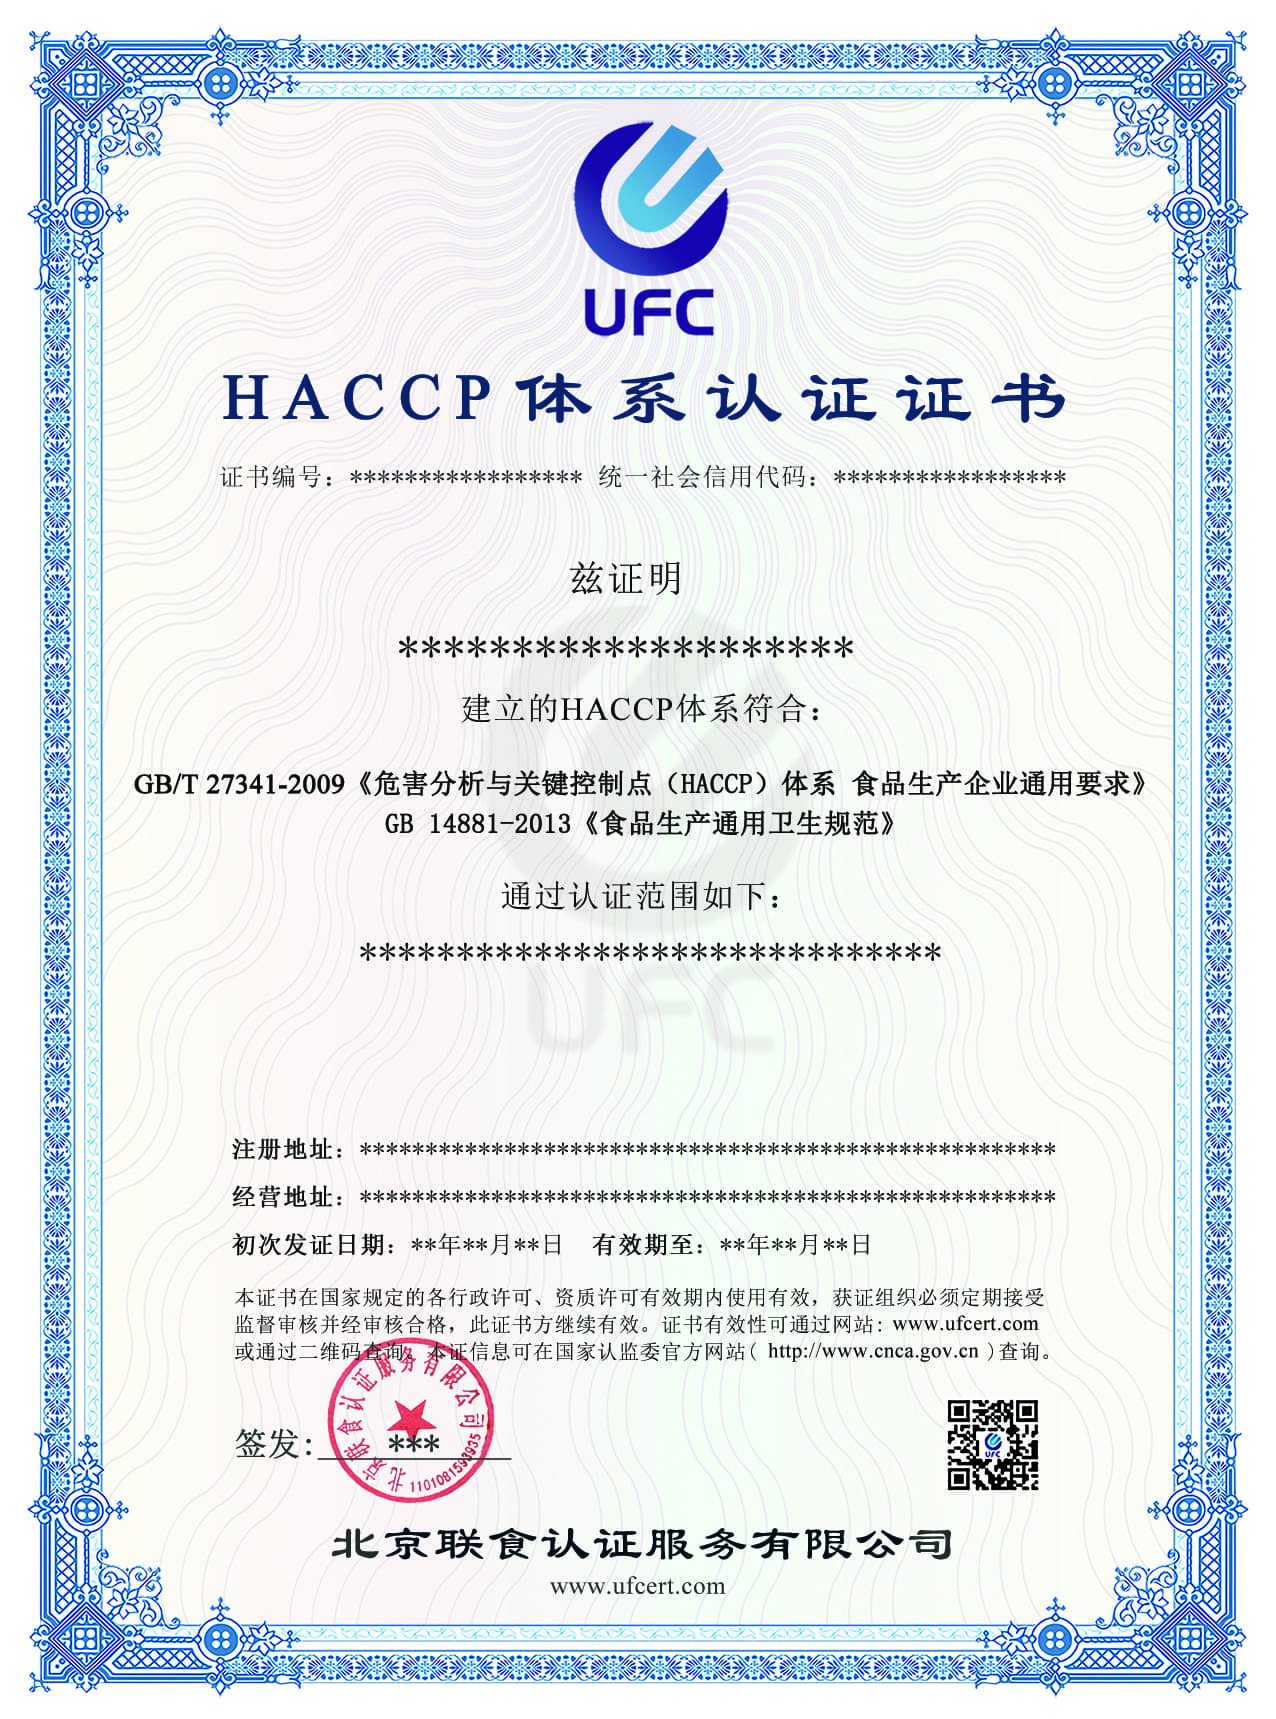 HACCP 中文盖章版.jpg